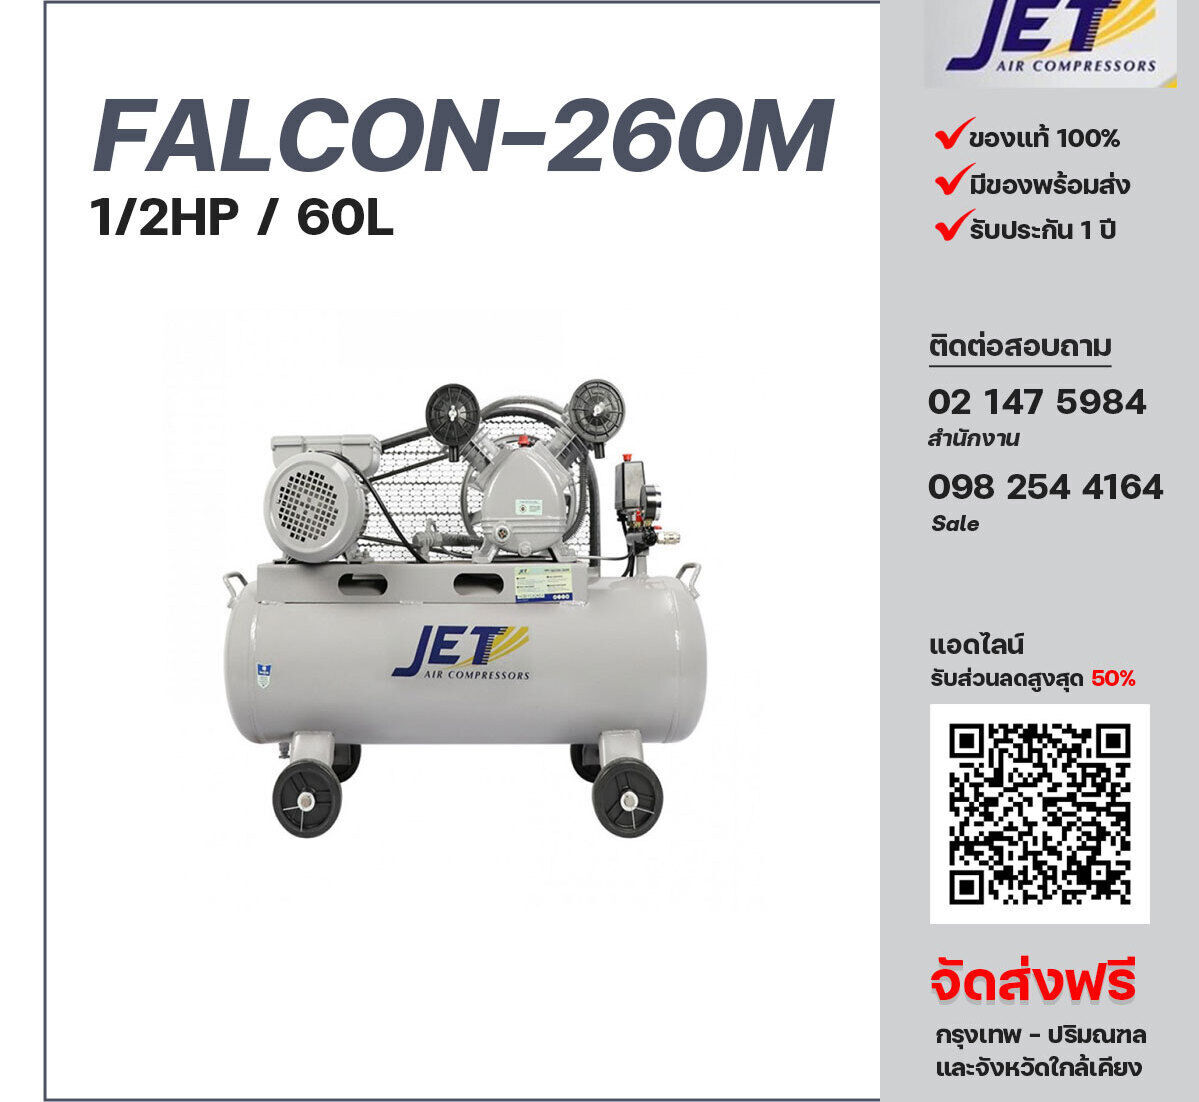 ปั๊มลมเจ็ท JET รุ่น FALCON-260M 220V ปั๊มลมลูกสูบ ขนาด 2 สูบ 1/2  แรงม้า 60 ลิตร JET พร้อมมอเตอร์ ไฟ 220V ส่งฟรี กรุงเทพฯ-ปริมณฑล รับประกัน 1 ปี